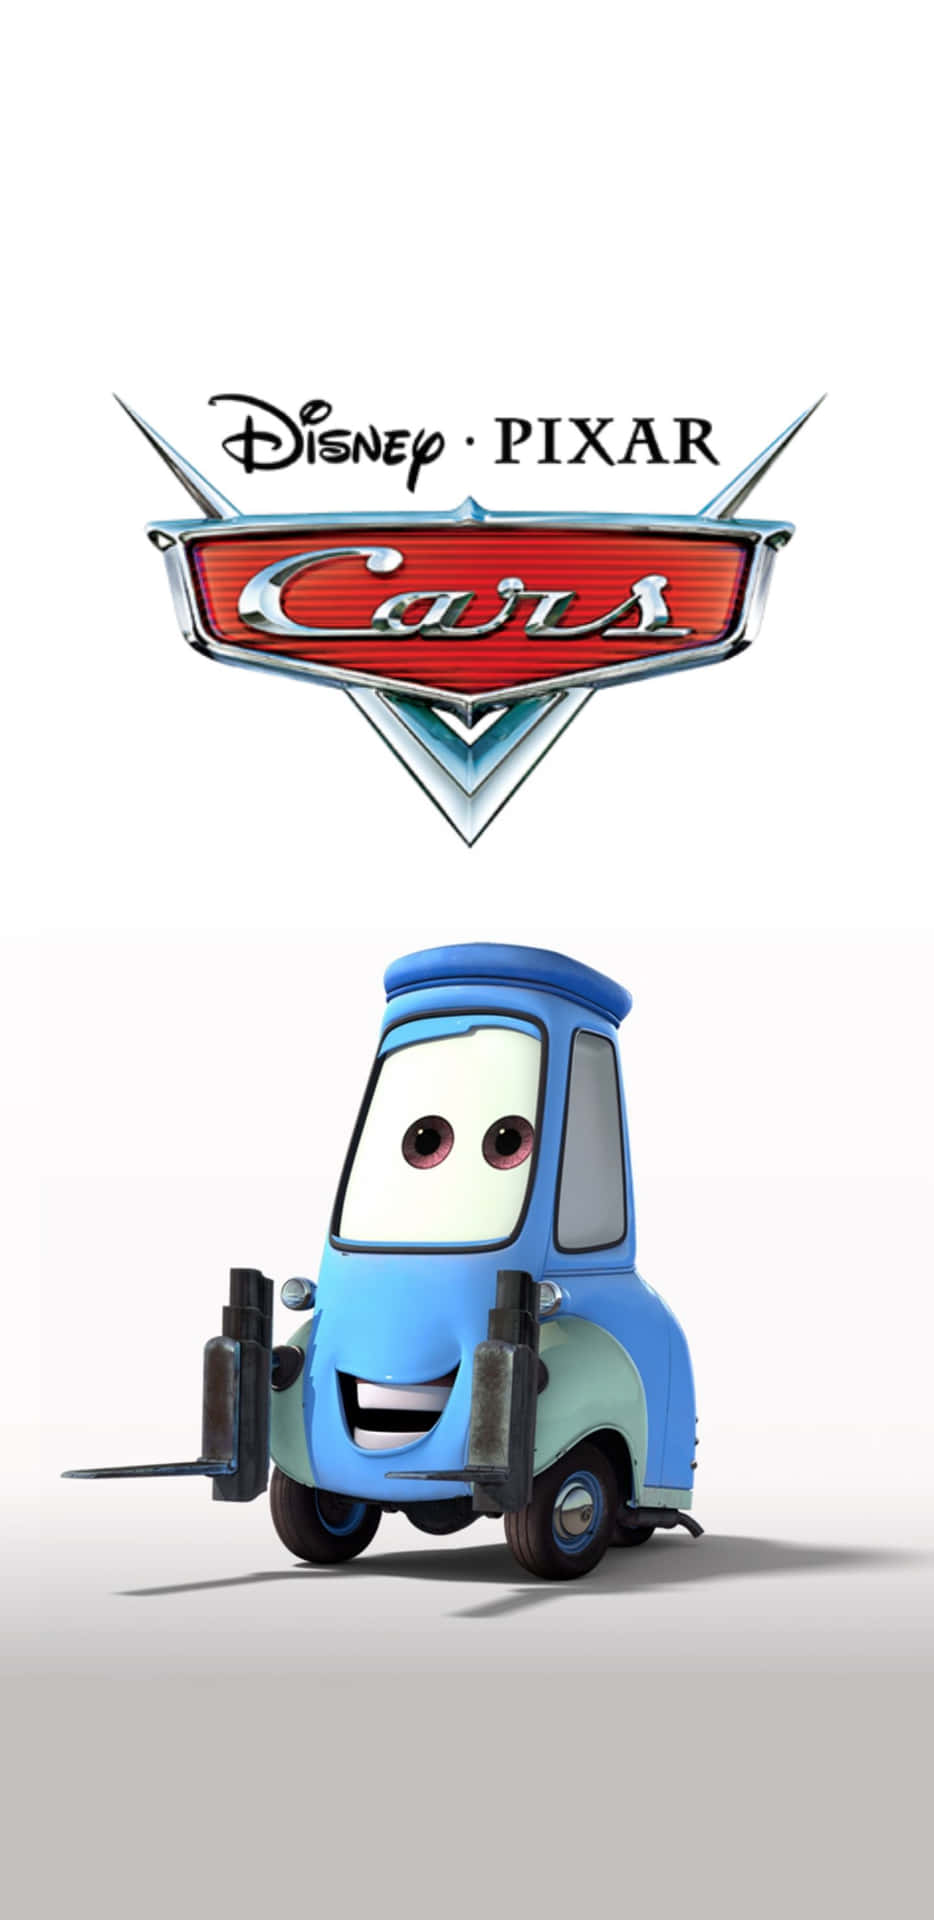 Fondosde Pantalla De Cars De Disney Pixar